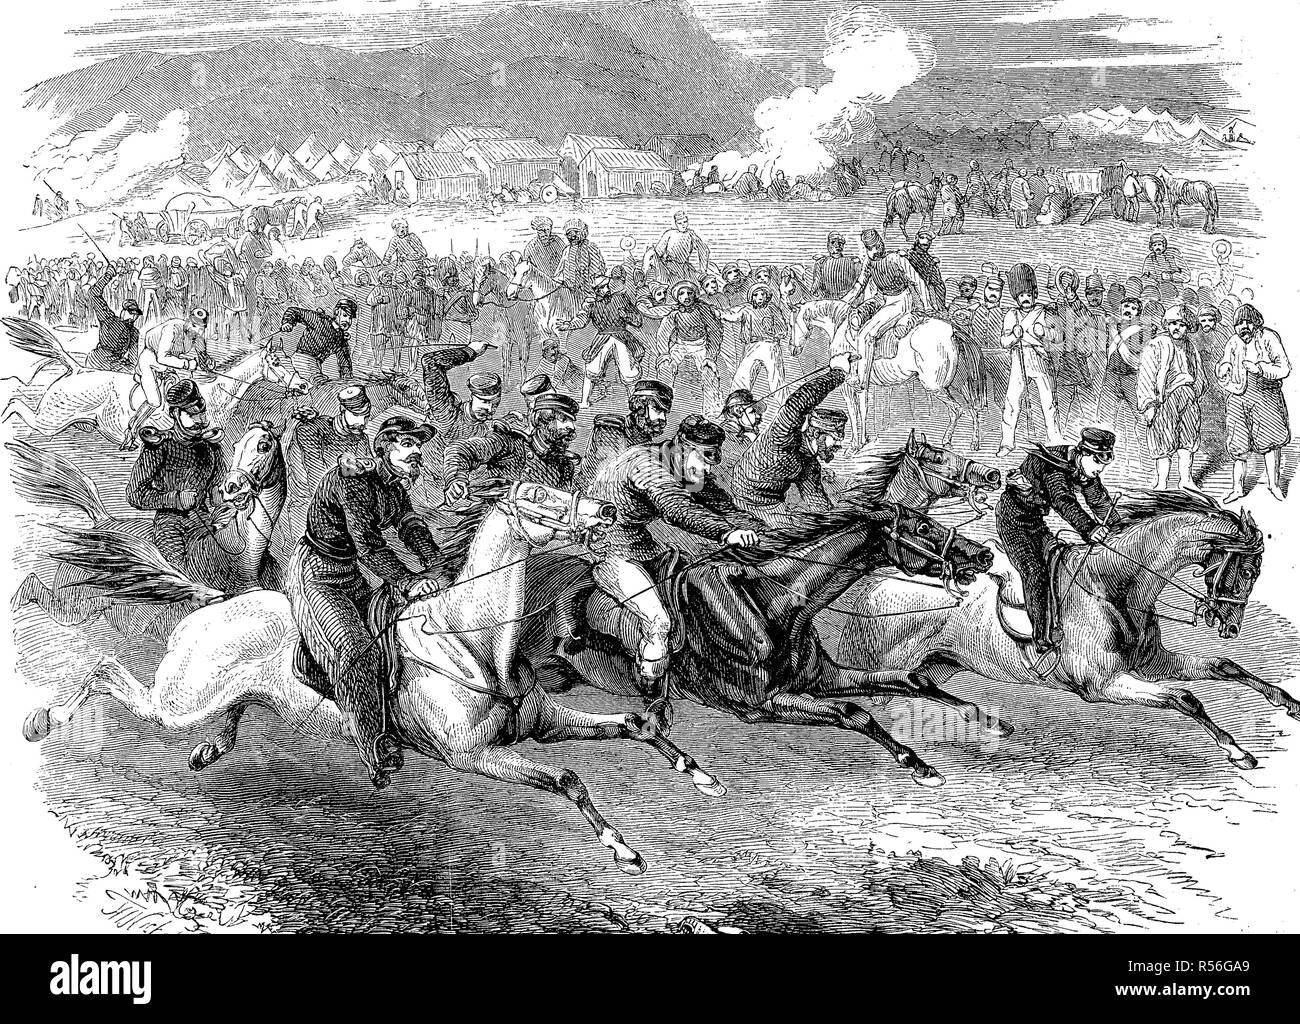 Rider jeux à détourner les soldats dans le camp anglais de Sébastopol, guerre de Crimée, 1855, gravure sur bois, Russie Banque D'Images